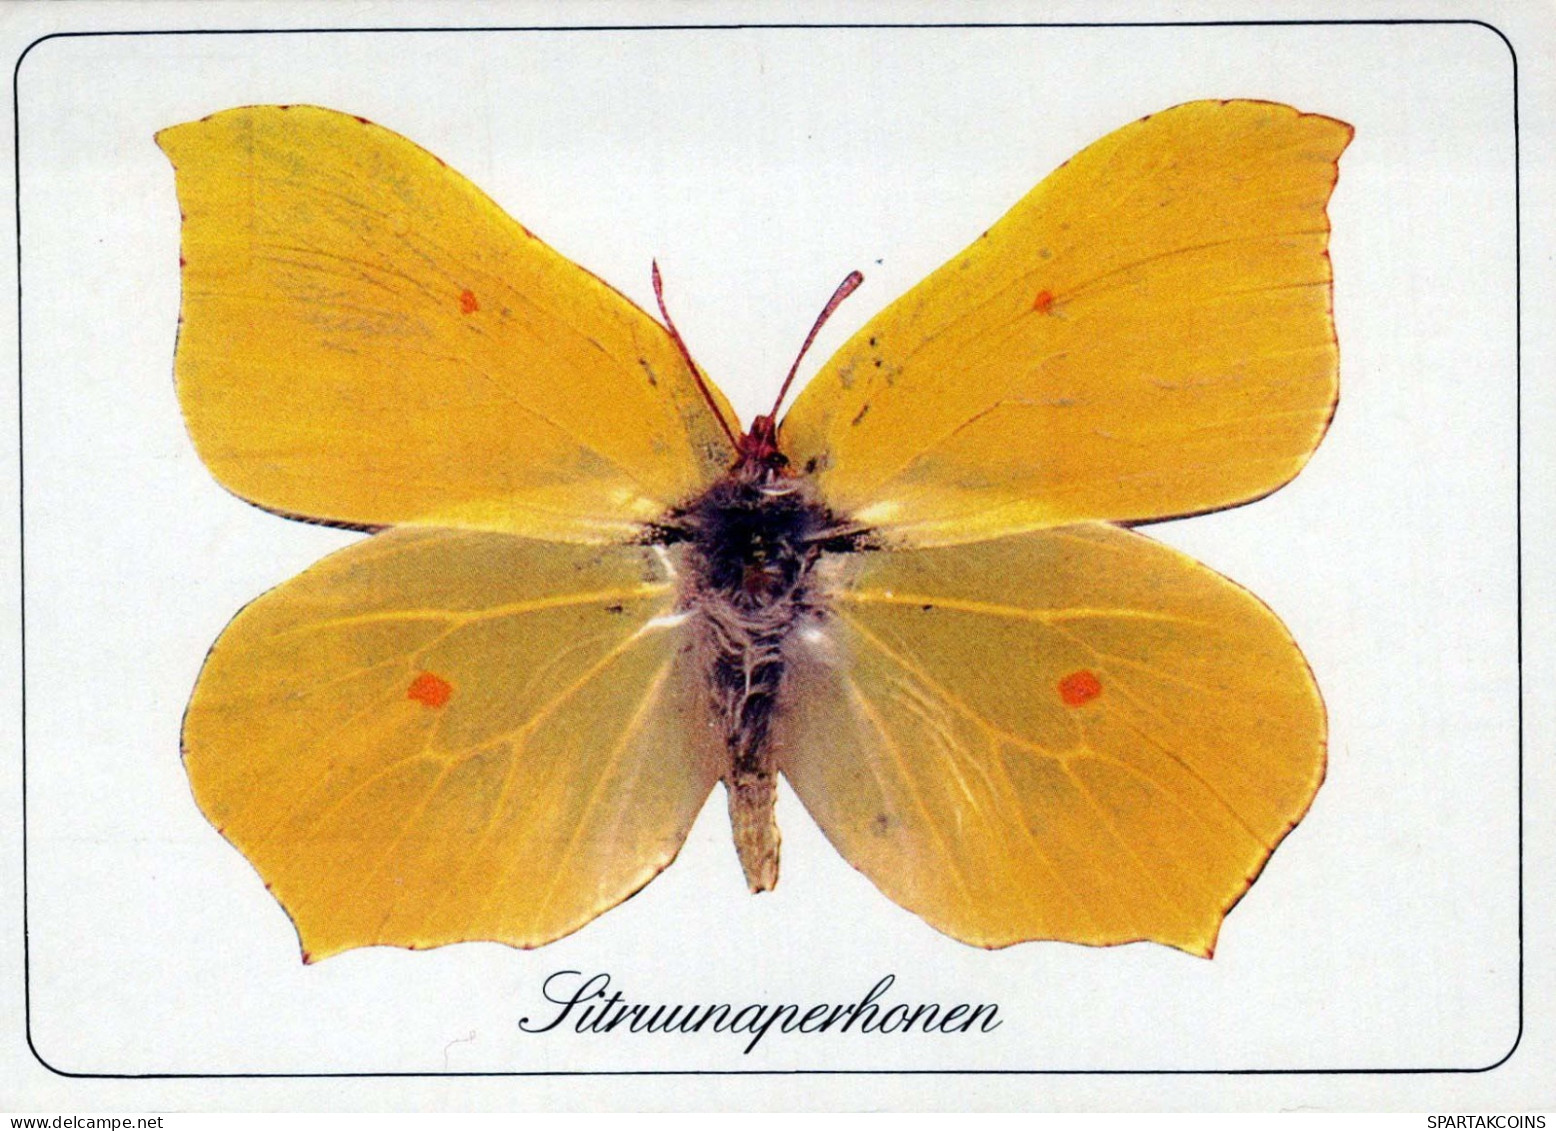 PAPILLONS Animaux Vintage Carte Postale CPSM #PBS423.A - Schmetterlinge